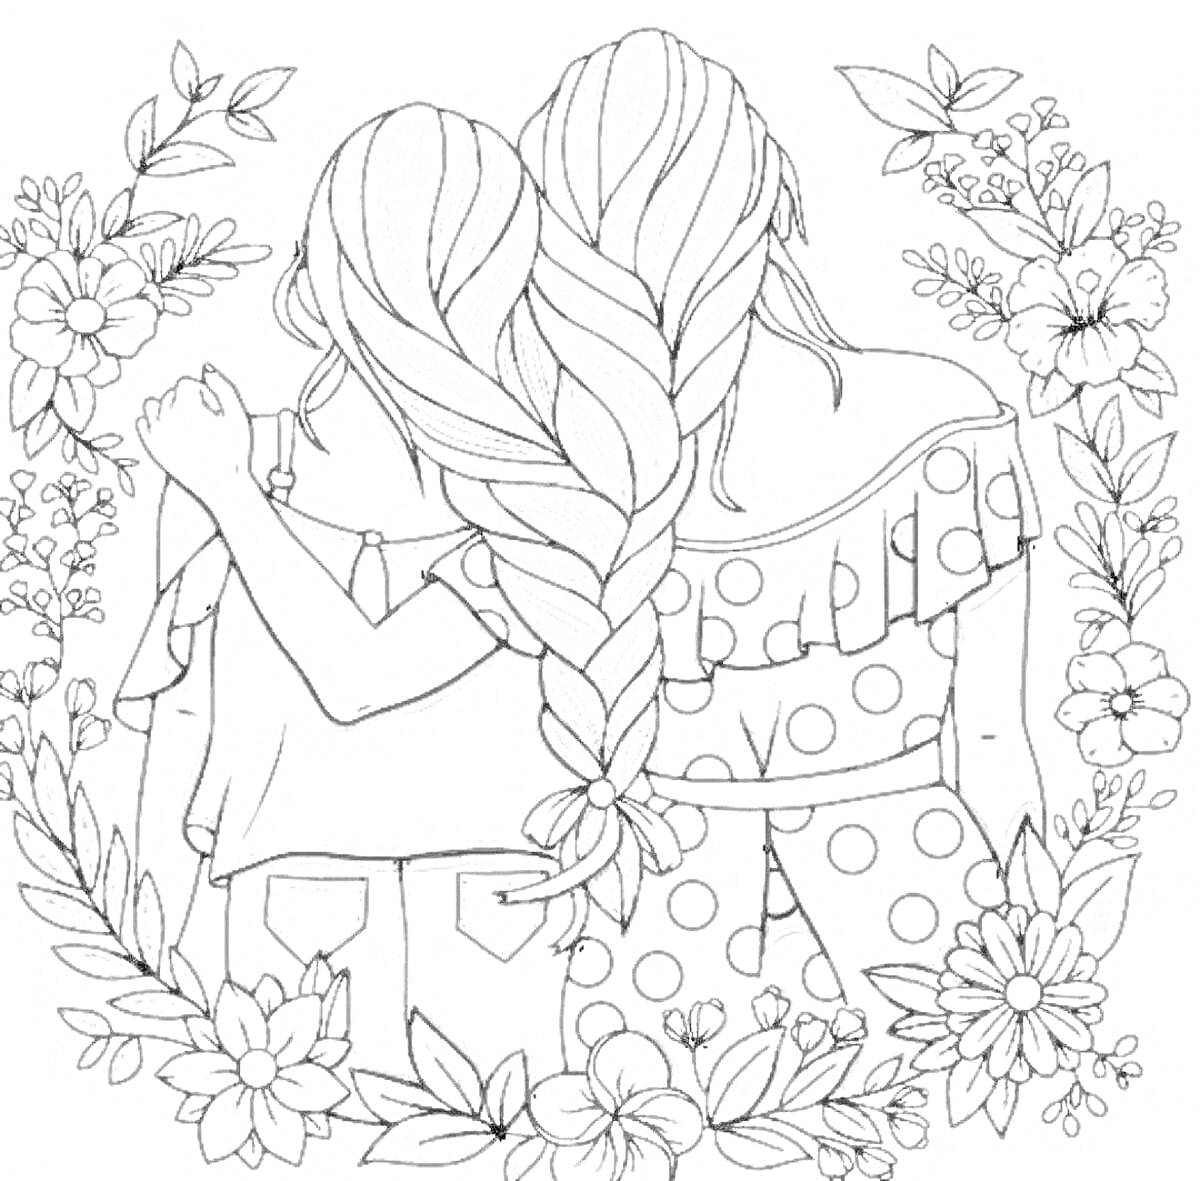 Раскраска Две девочки с косами в окружении цветов